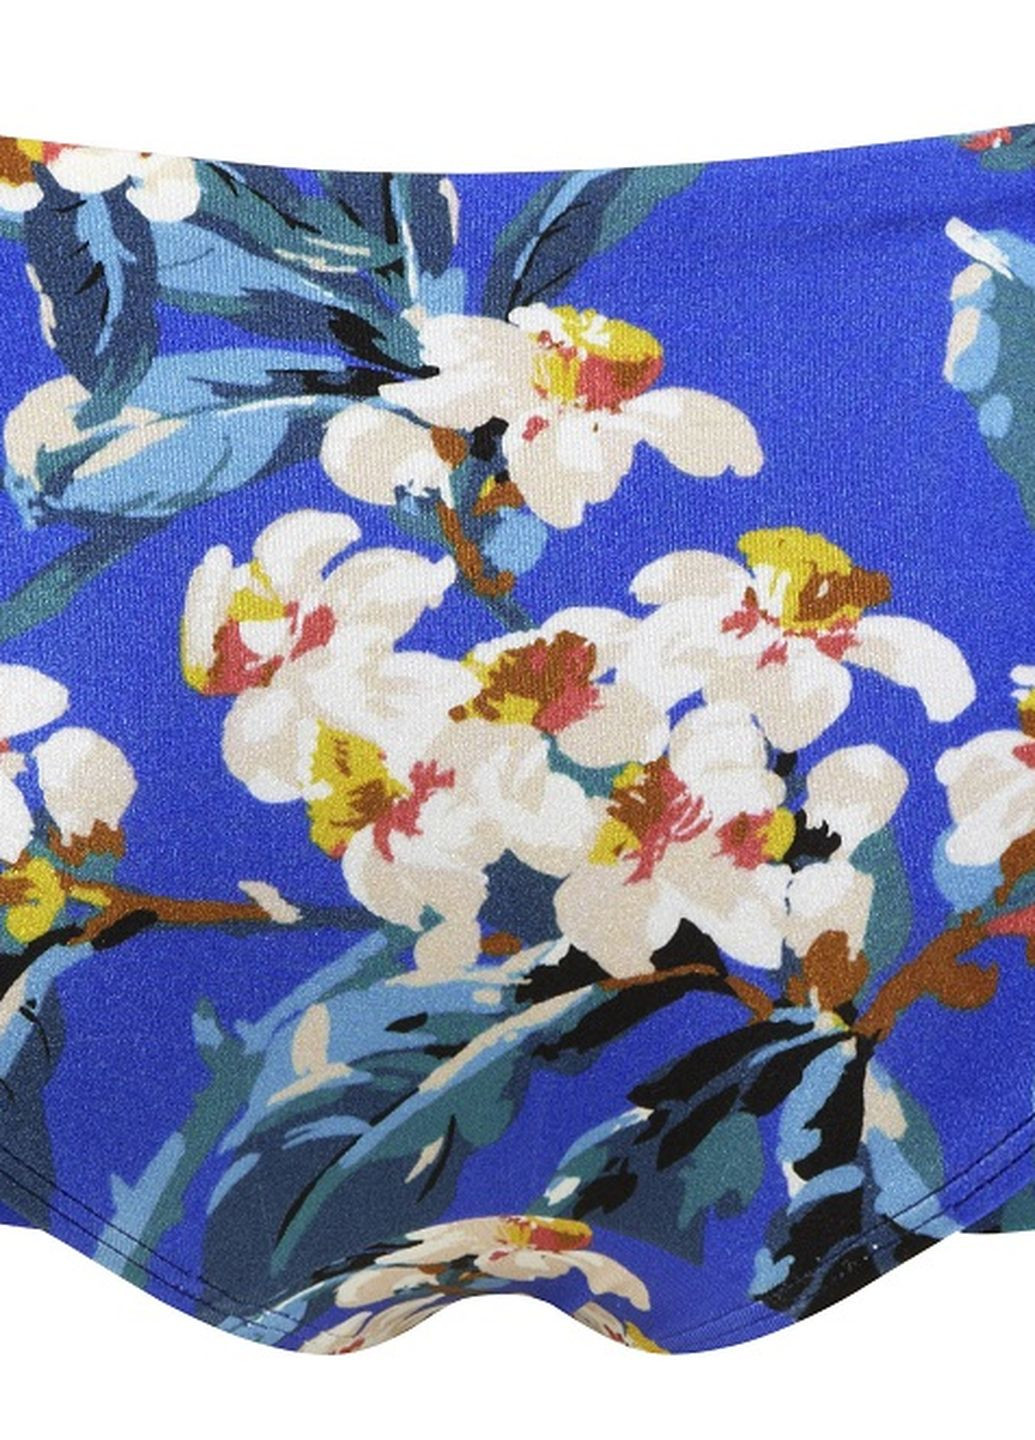 Синий летний купальник раздельный blossom 11275/11274 раздельный Gossard